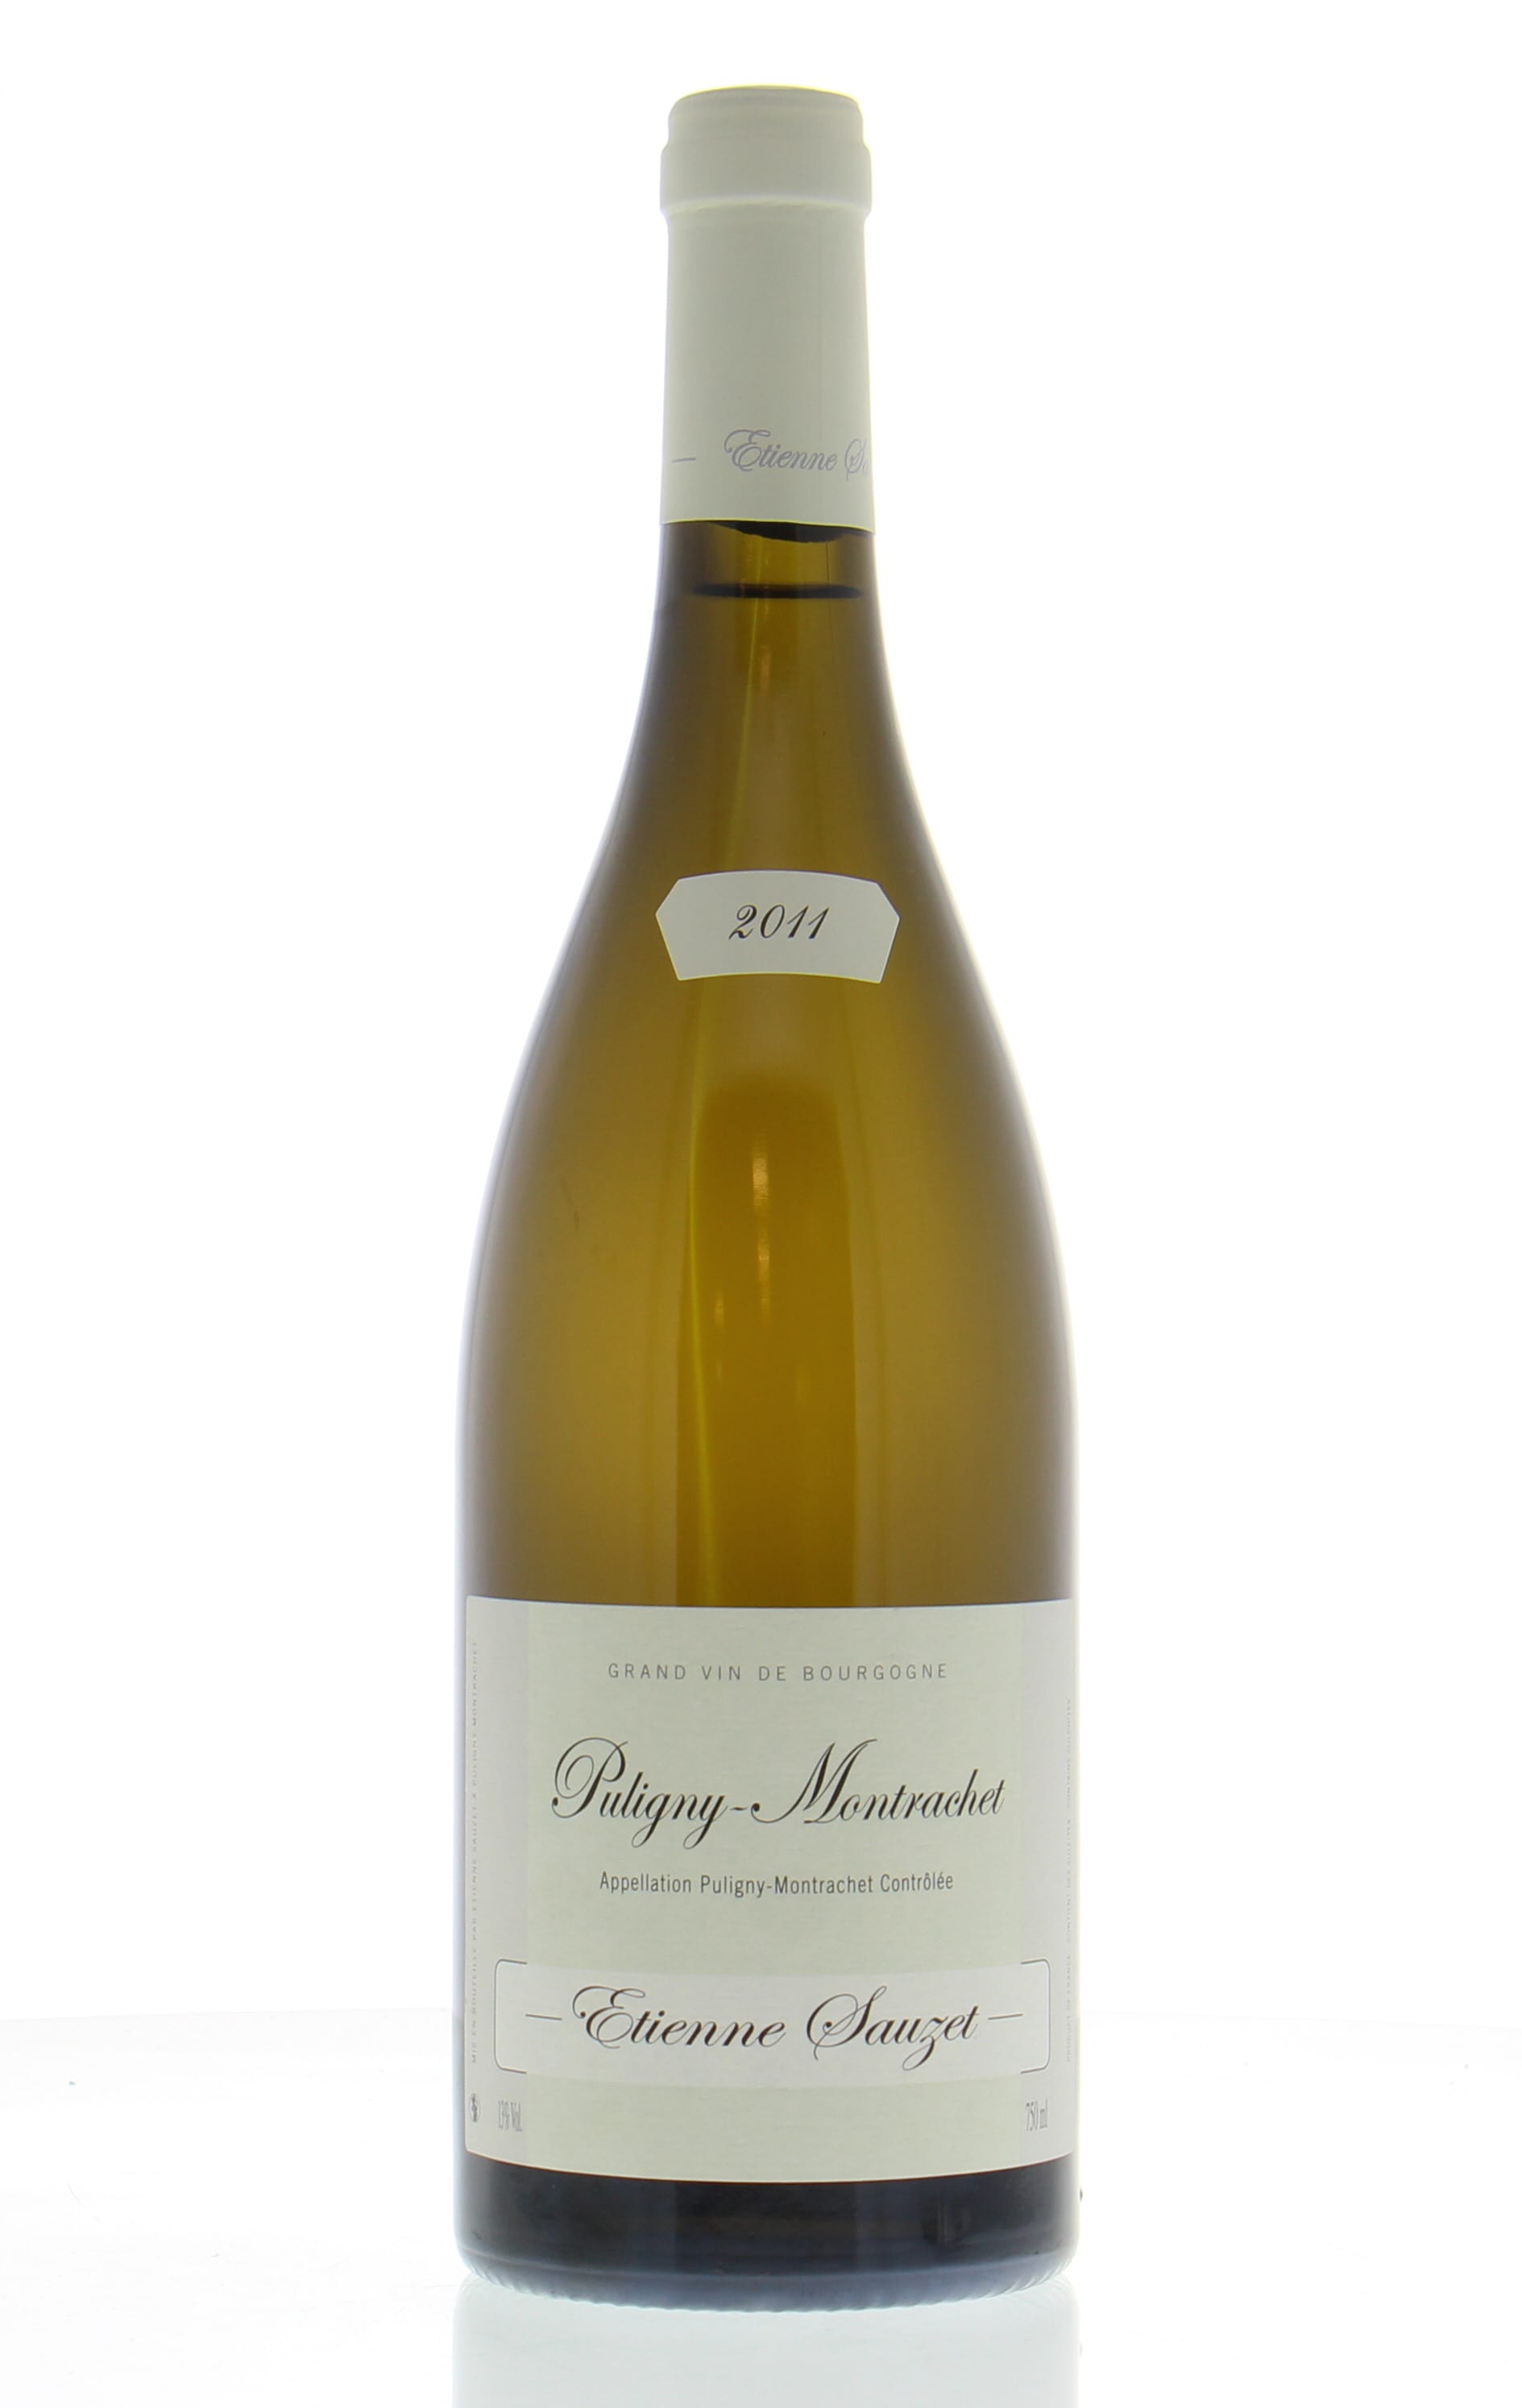 Sauzet - Puligny Montrachet 2011 perfect